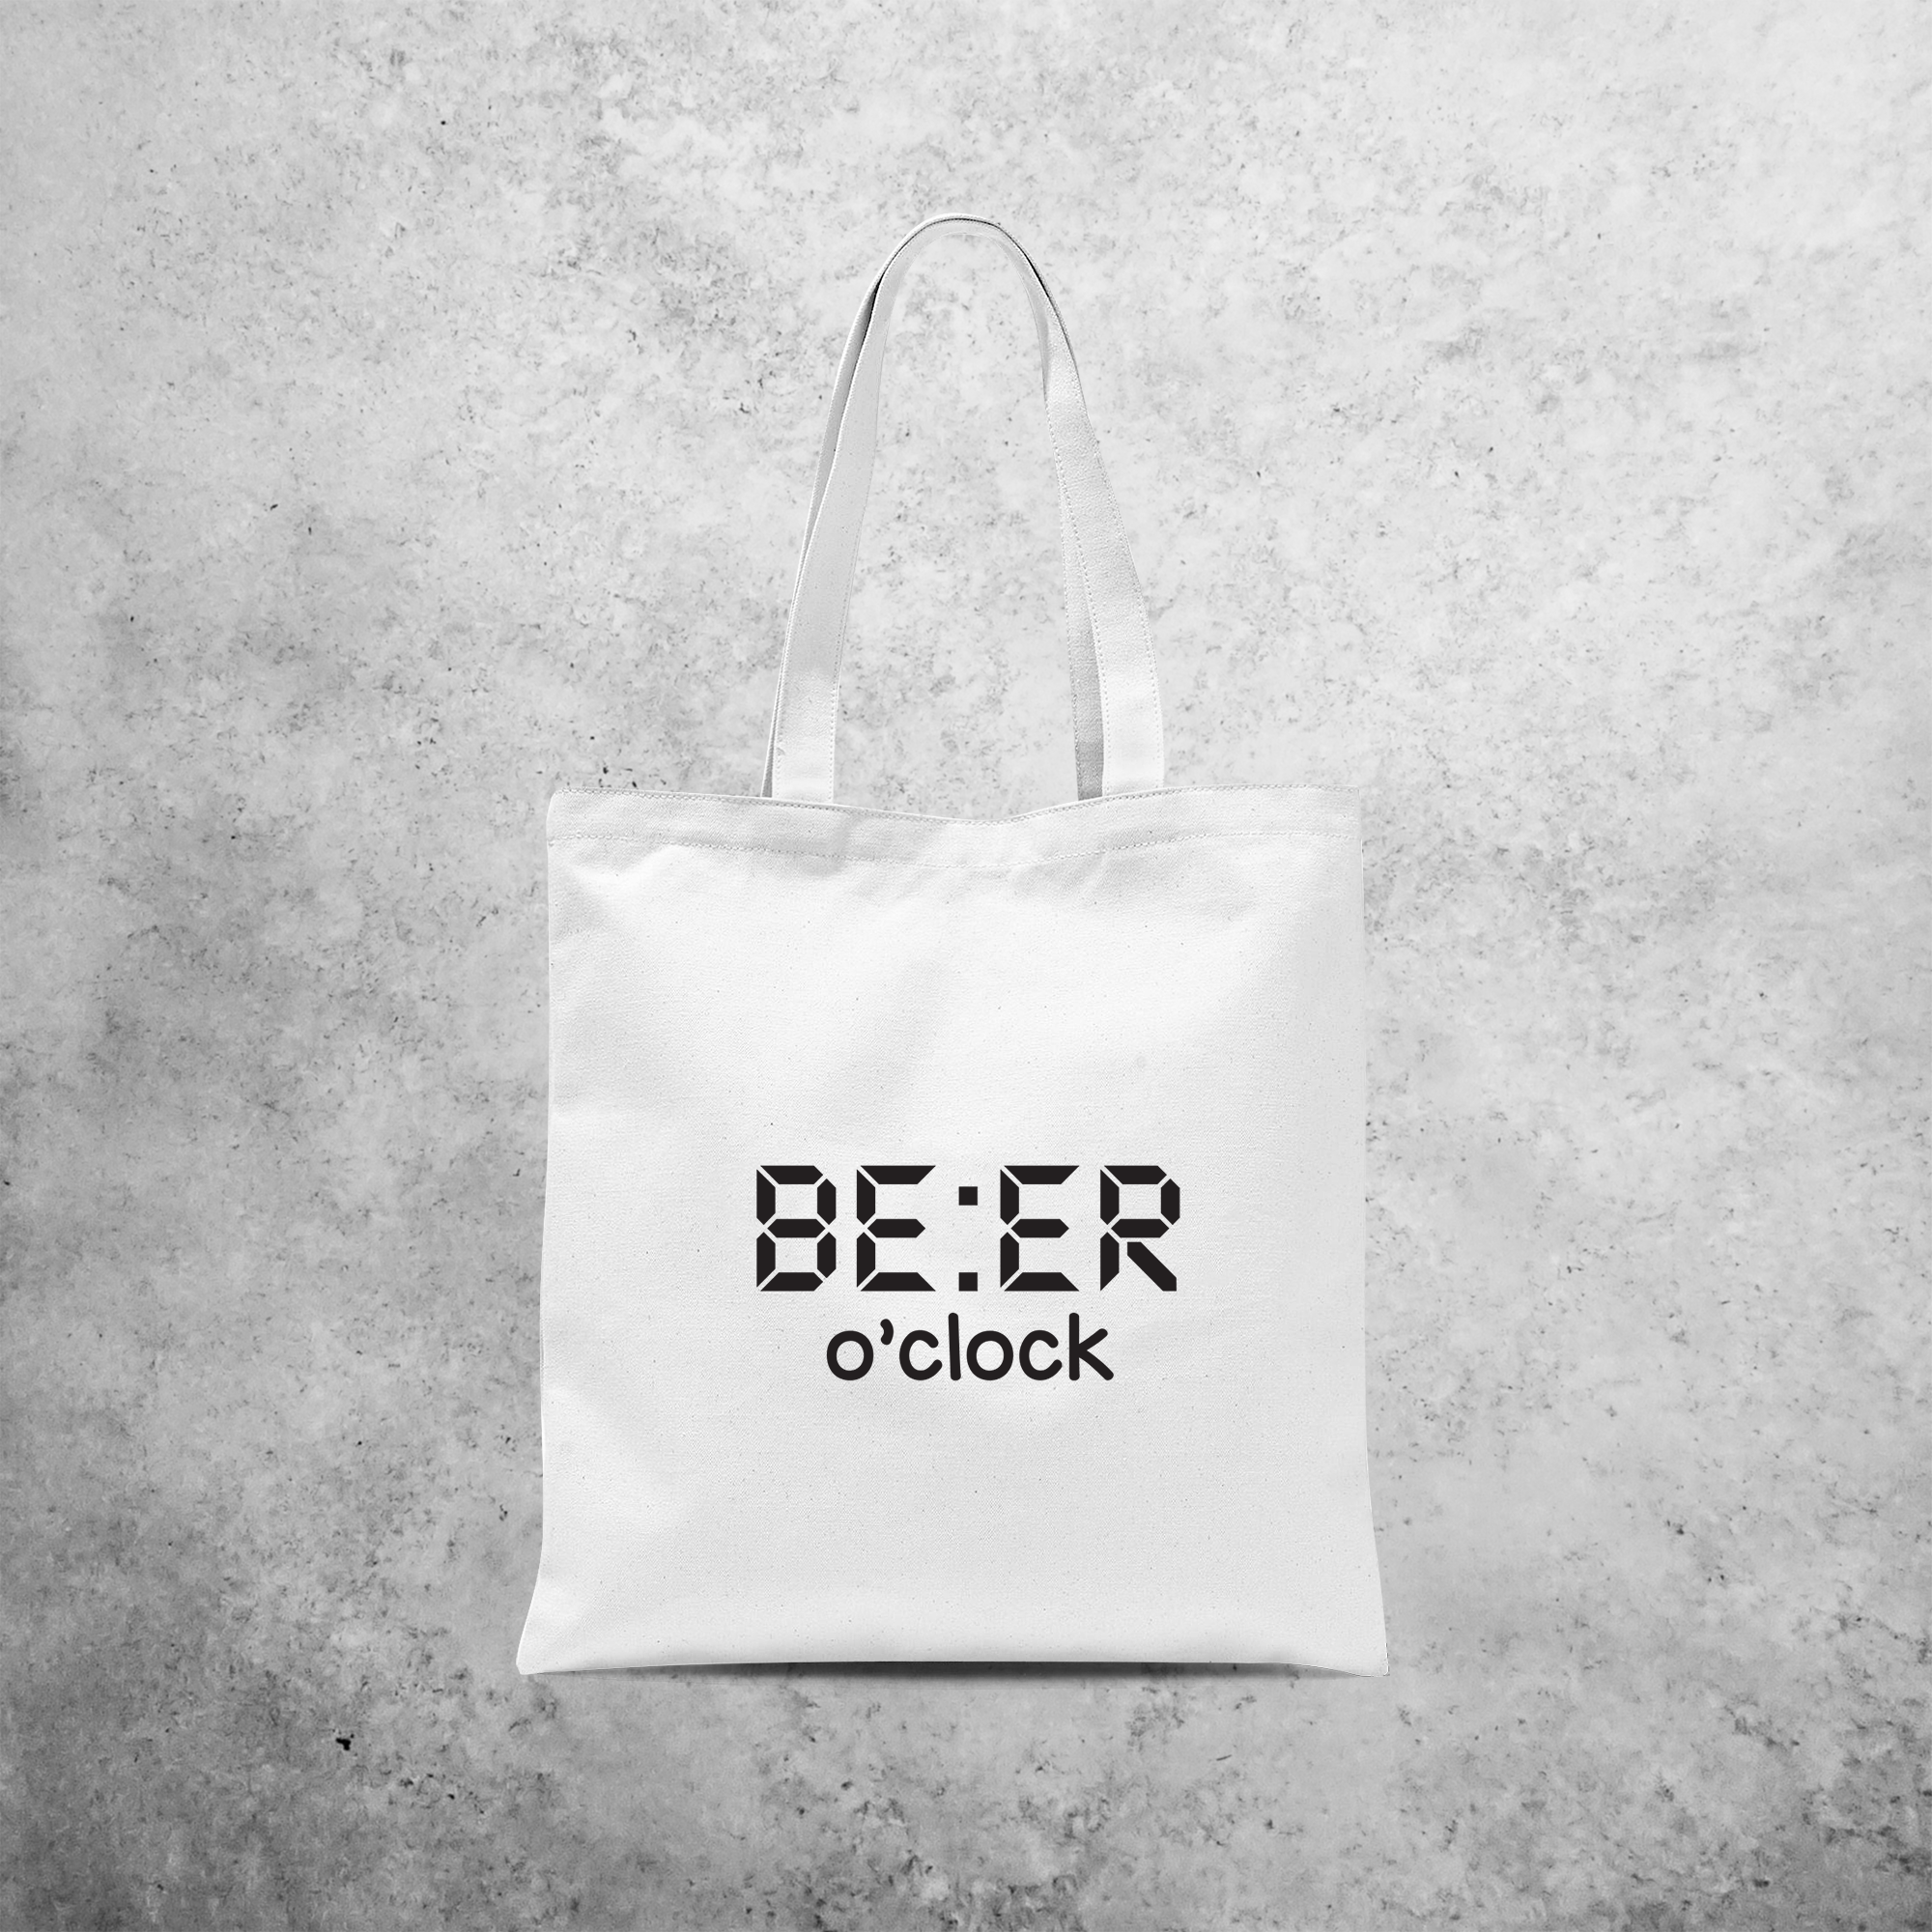 'Beer o'clock' tote bag